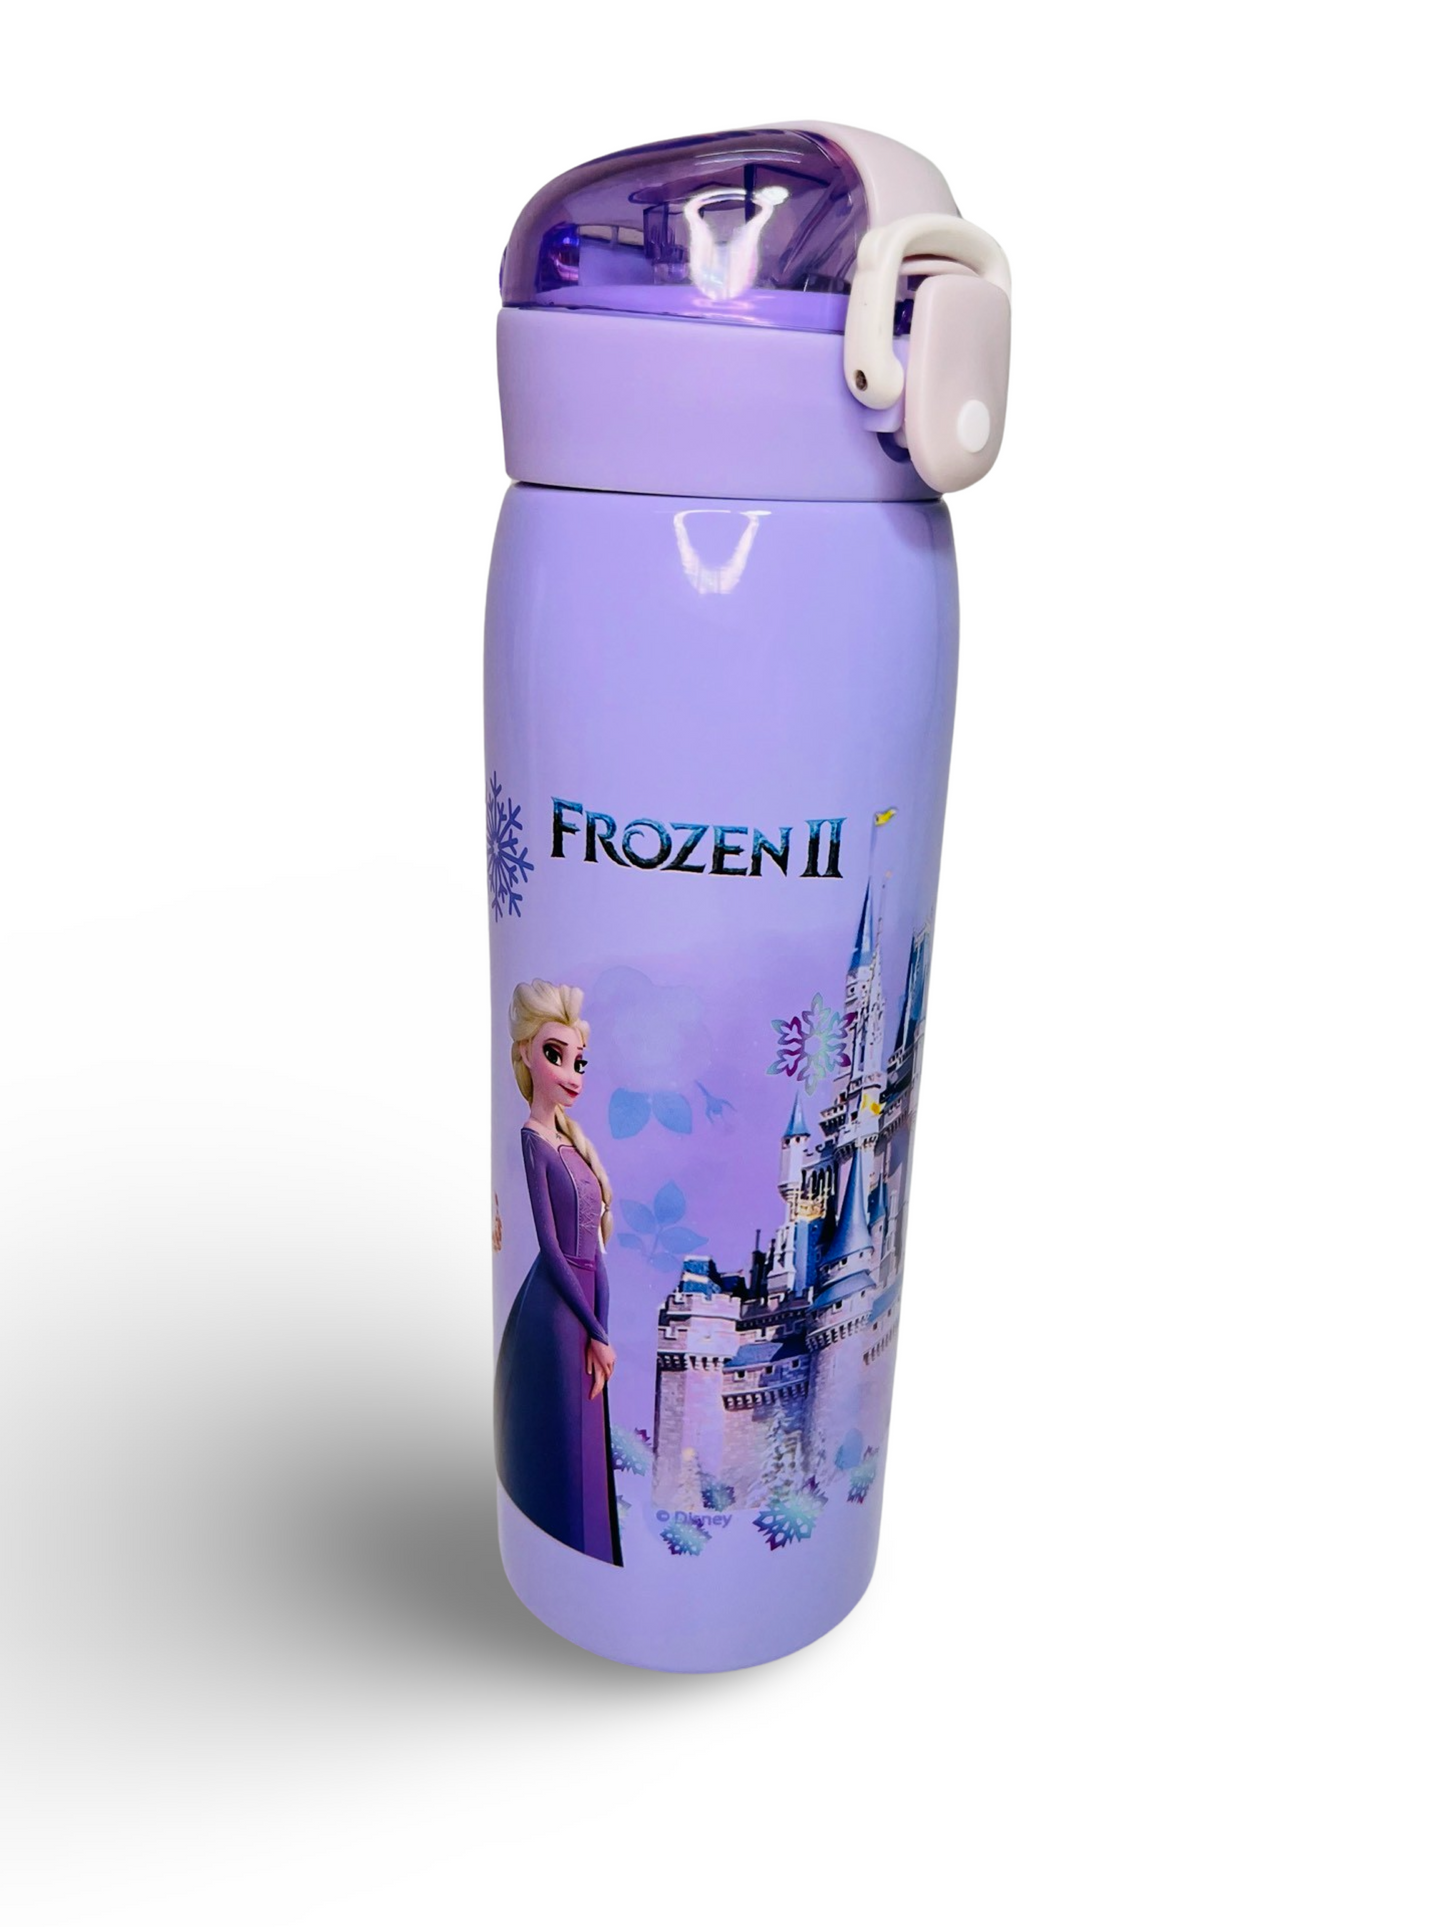 Avenger & Frozen Theme Stainless Steel Water Bottle for Kids (500ml)